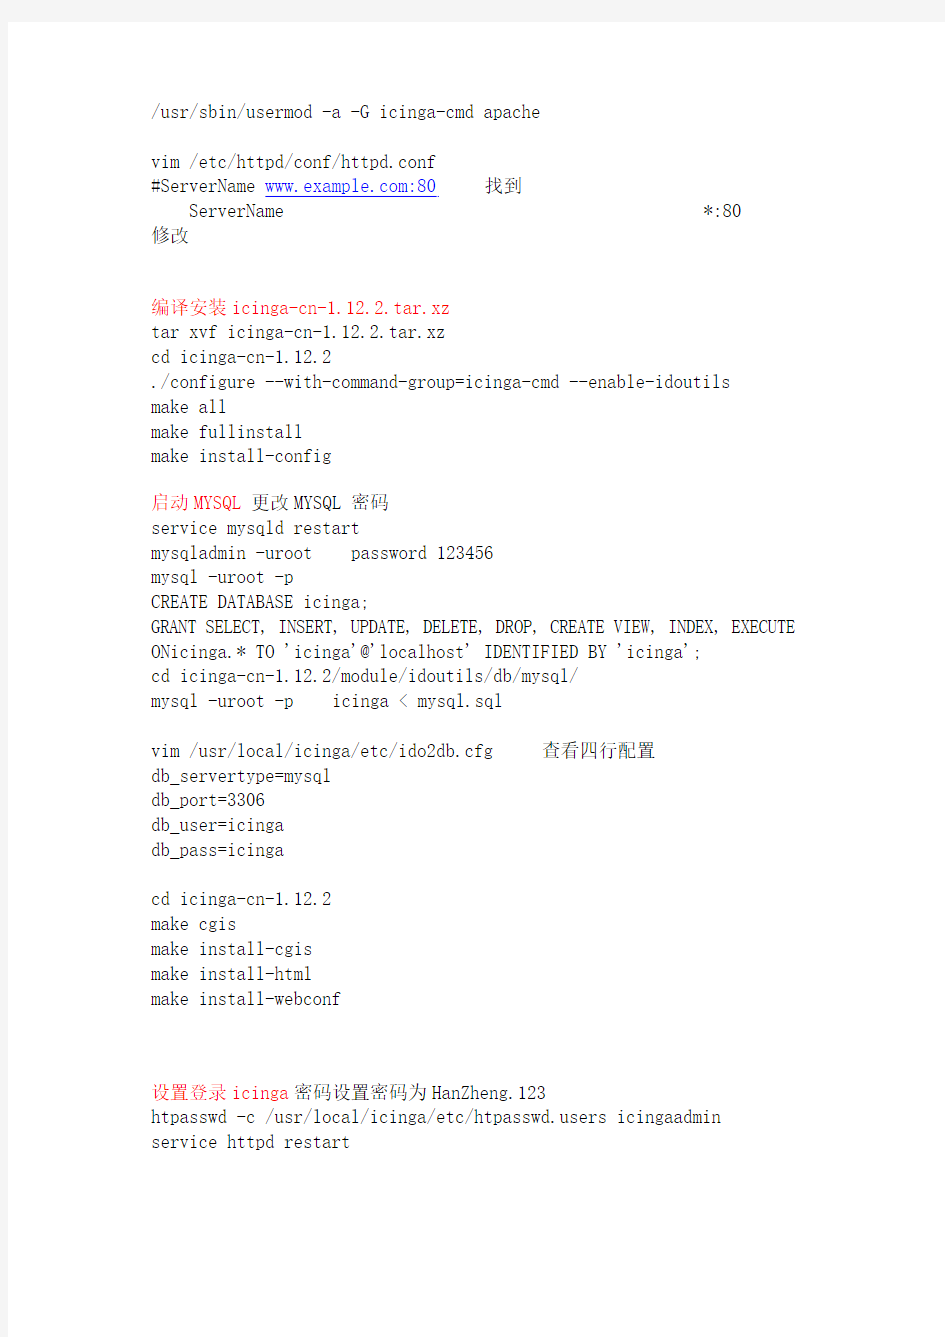 Centos 6.5 安装icingaweb1 中文版部署